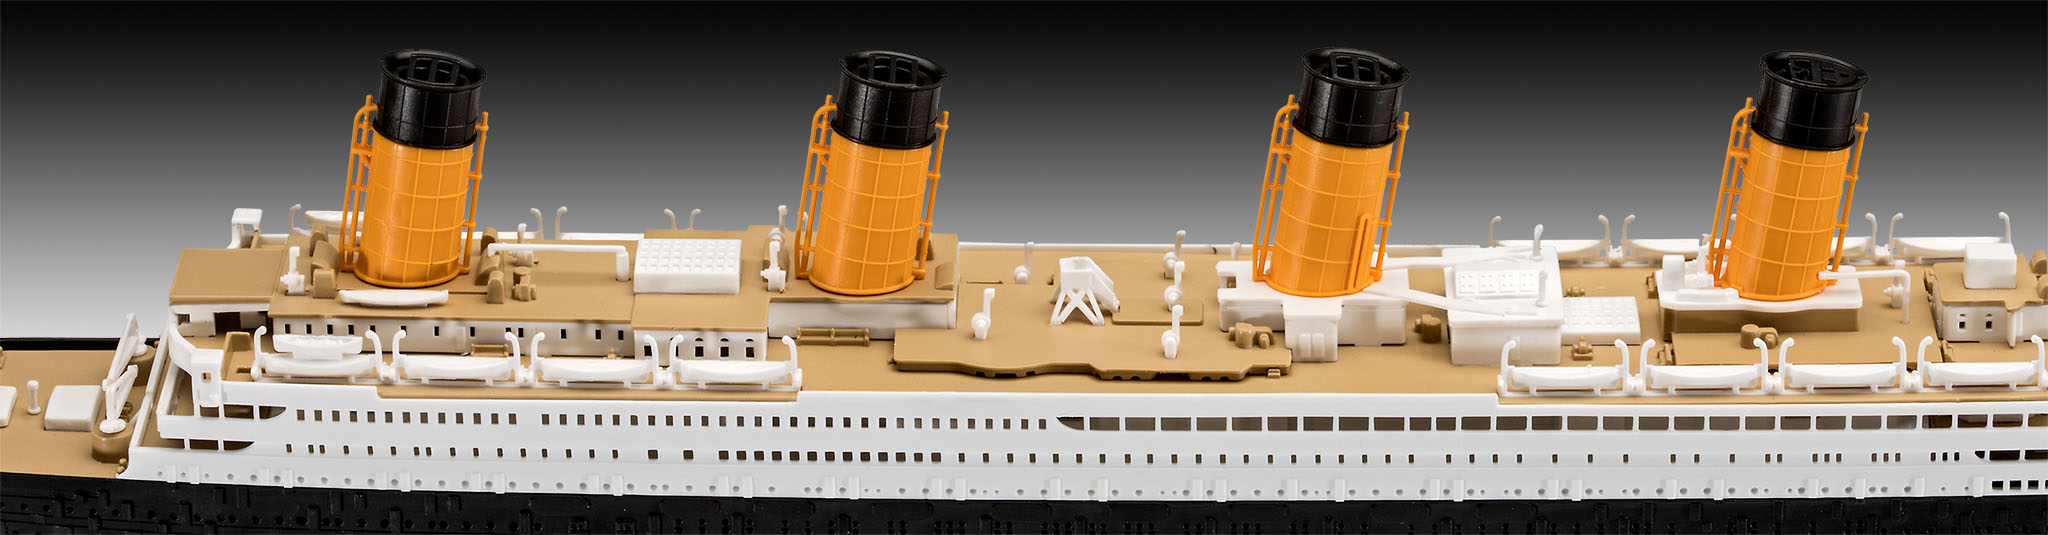   Revell   RMS TITANIC   1:600. # 3 hobbyplus.ru